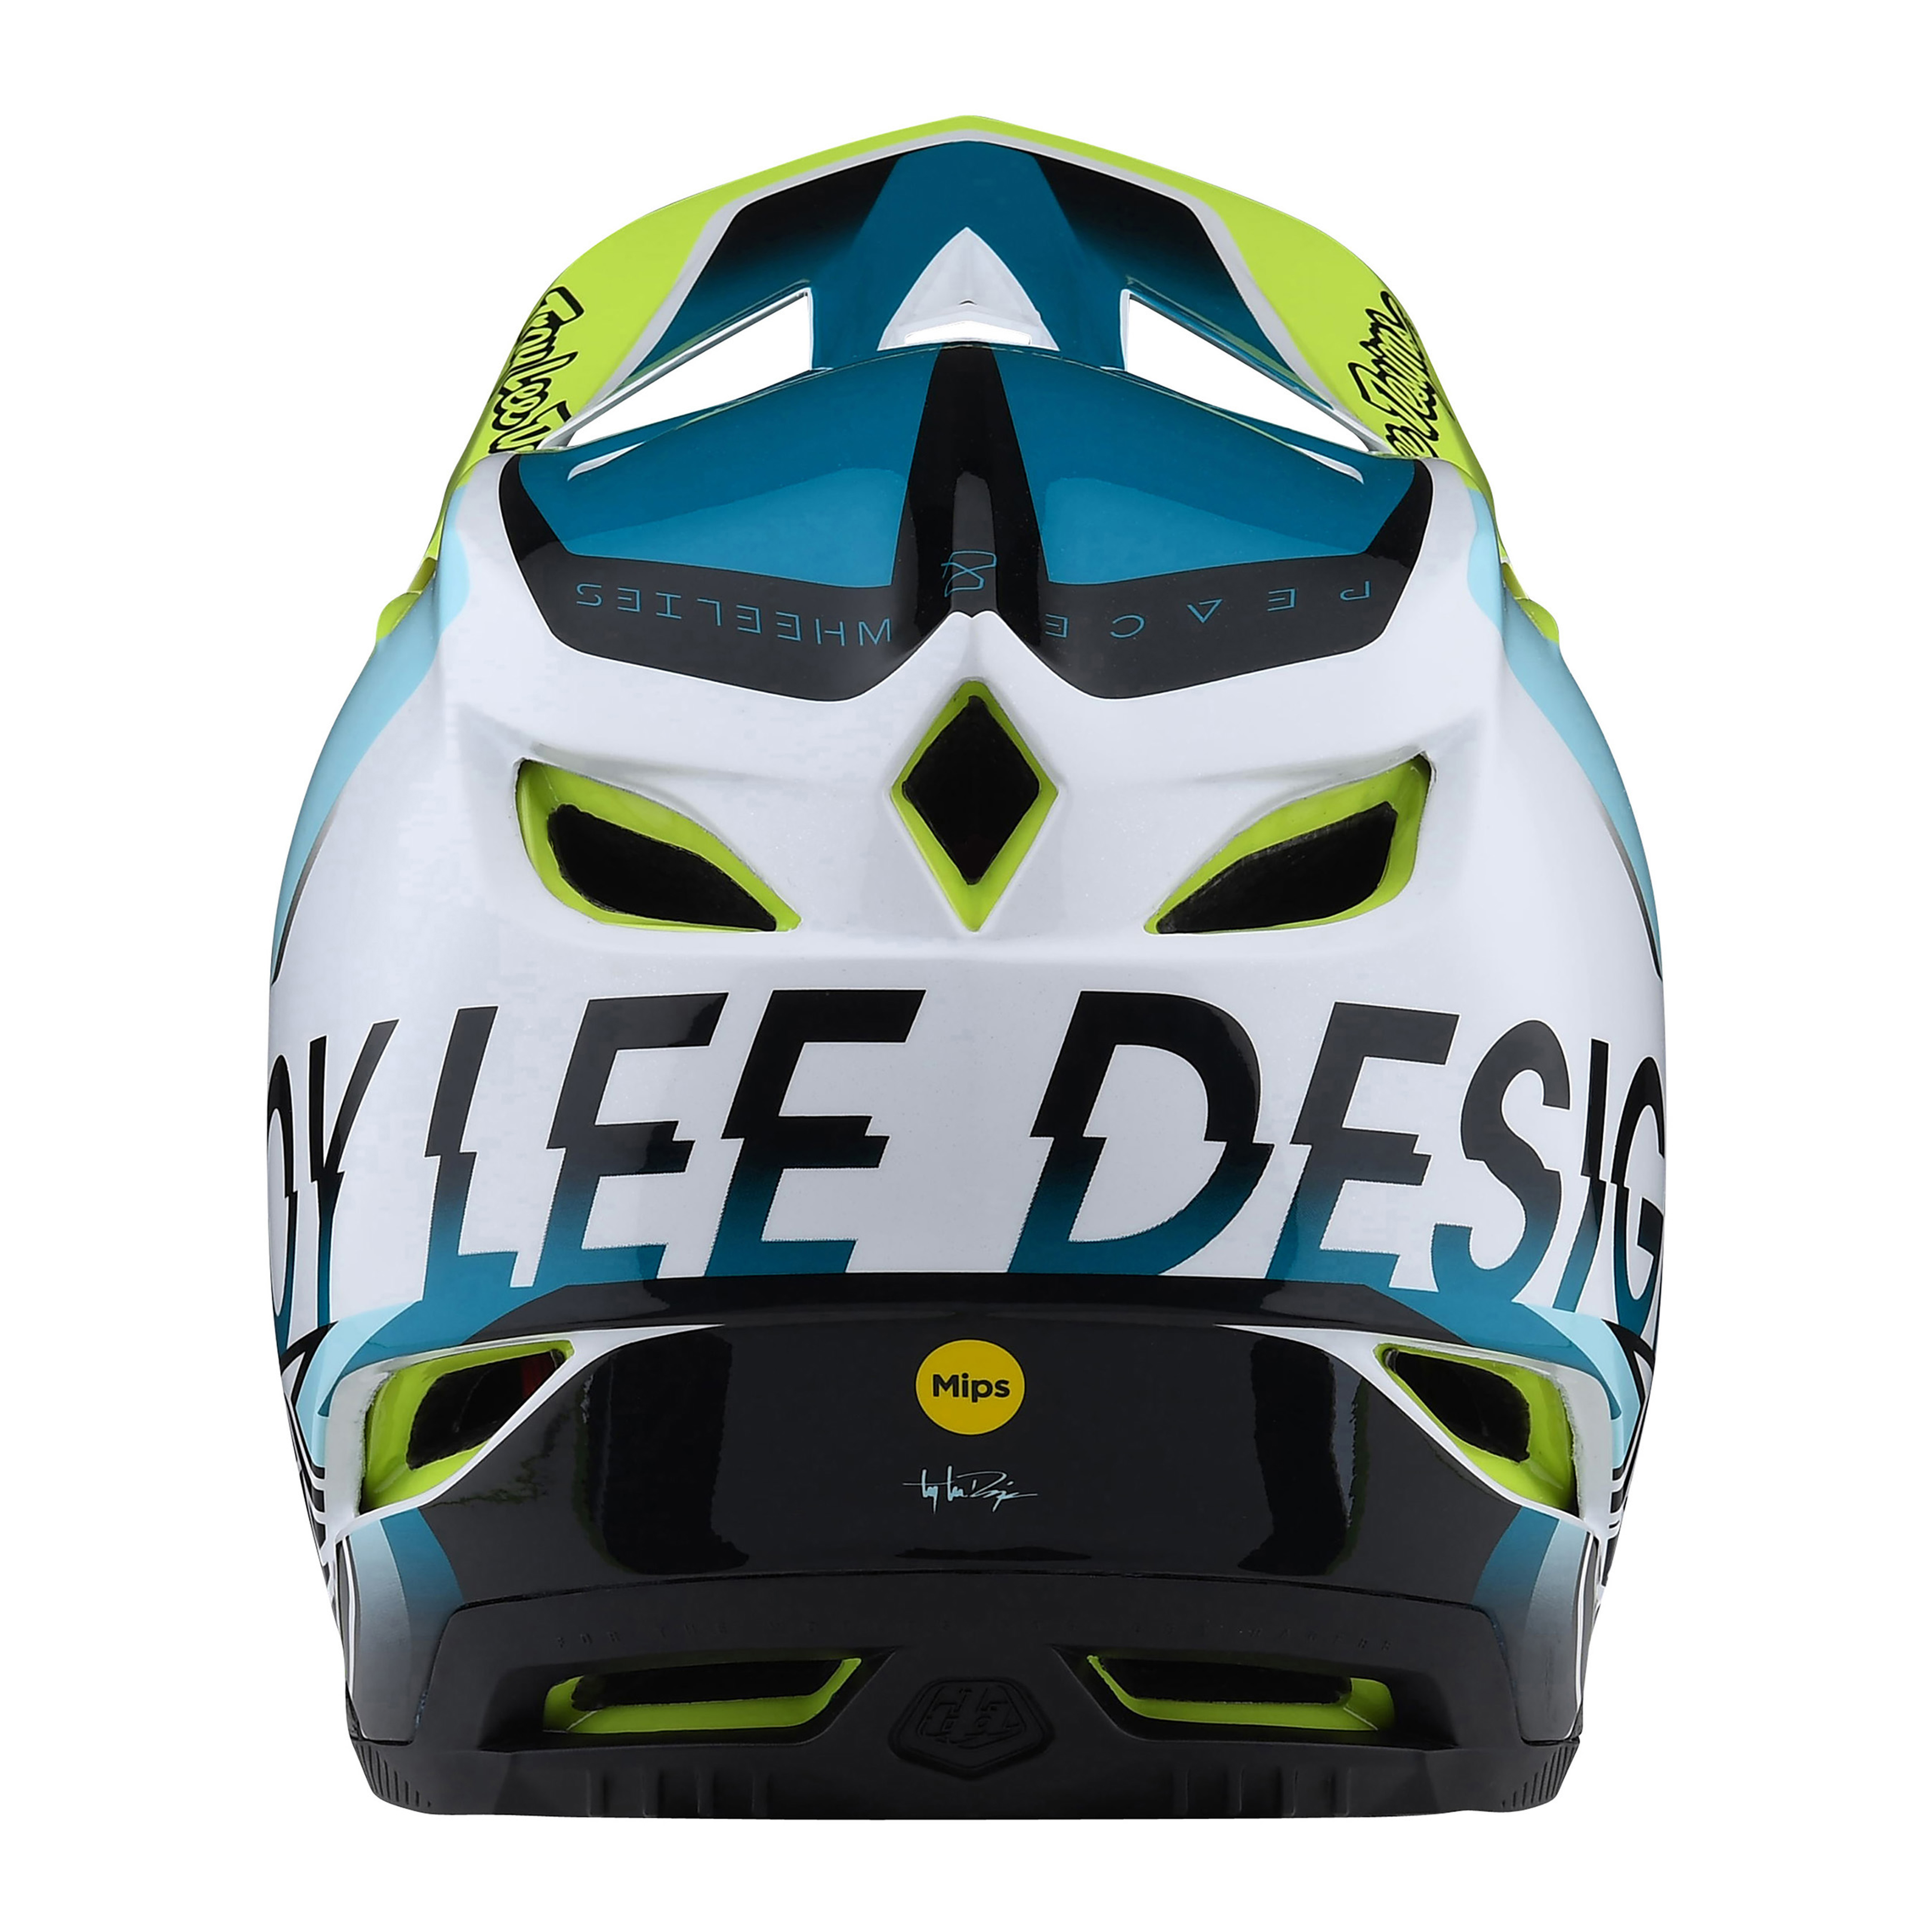 트로이리 디자인 D4 콤포지트 헬멧 (콸러파이어 화이트/그린)